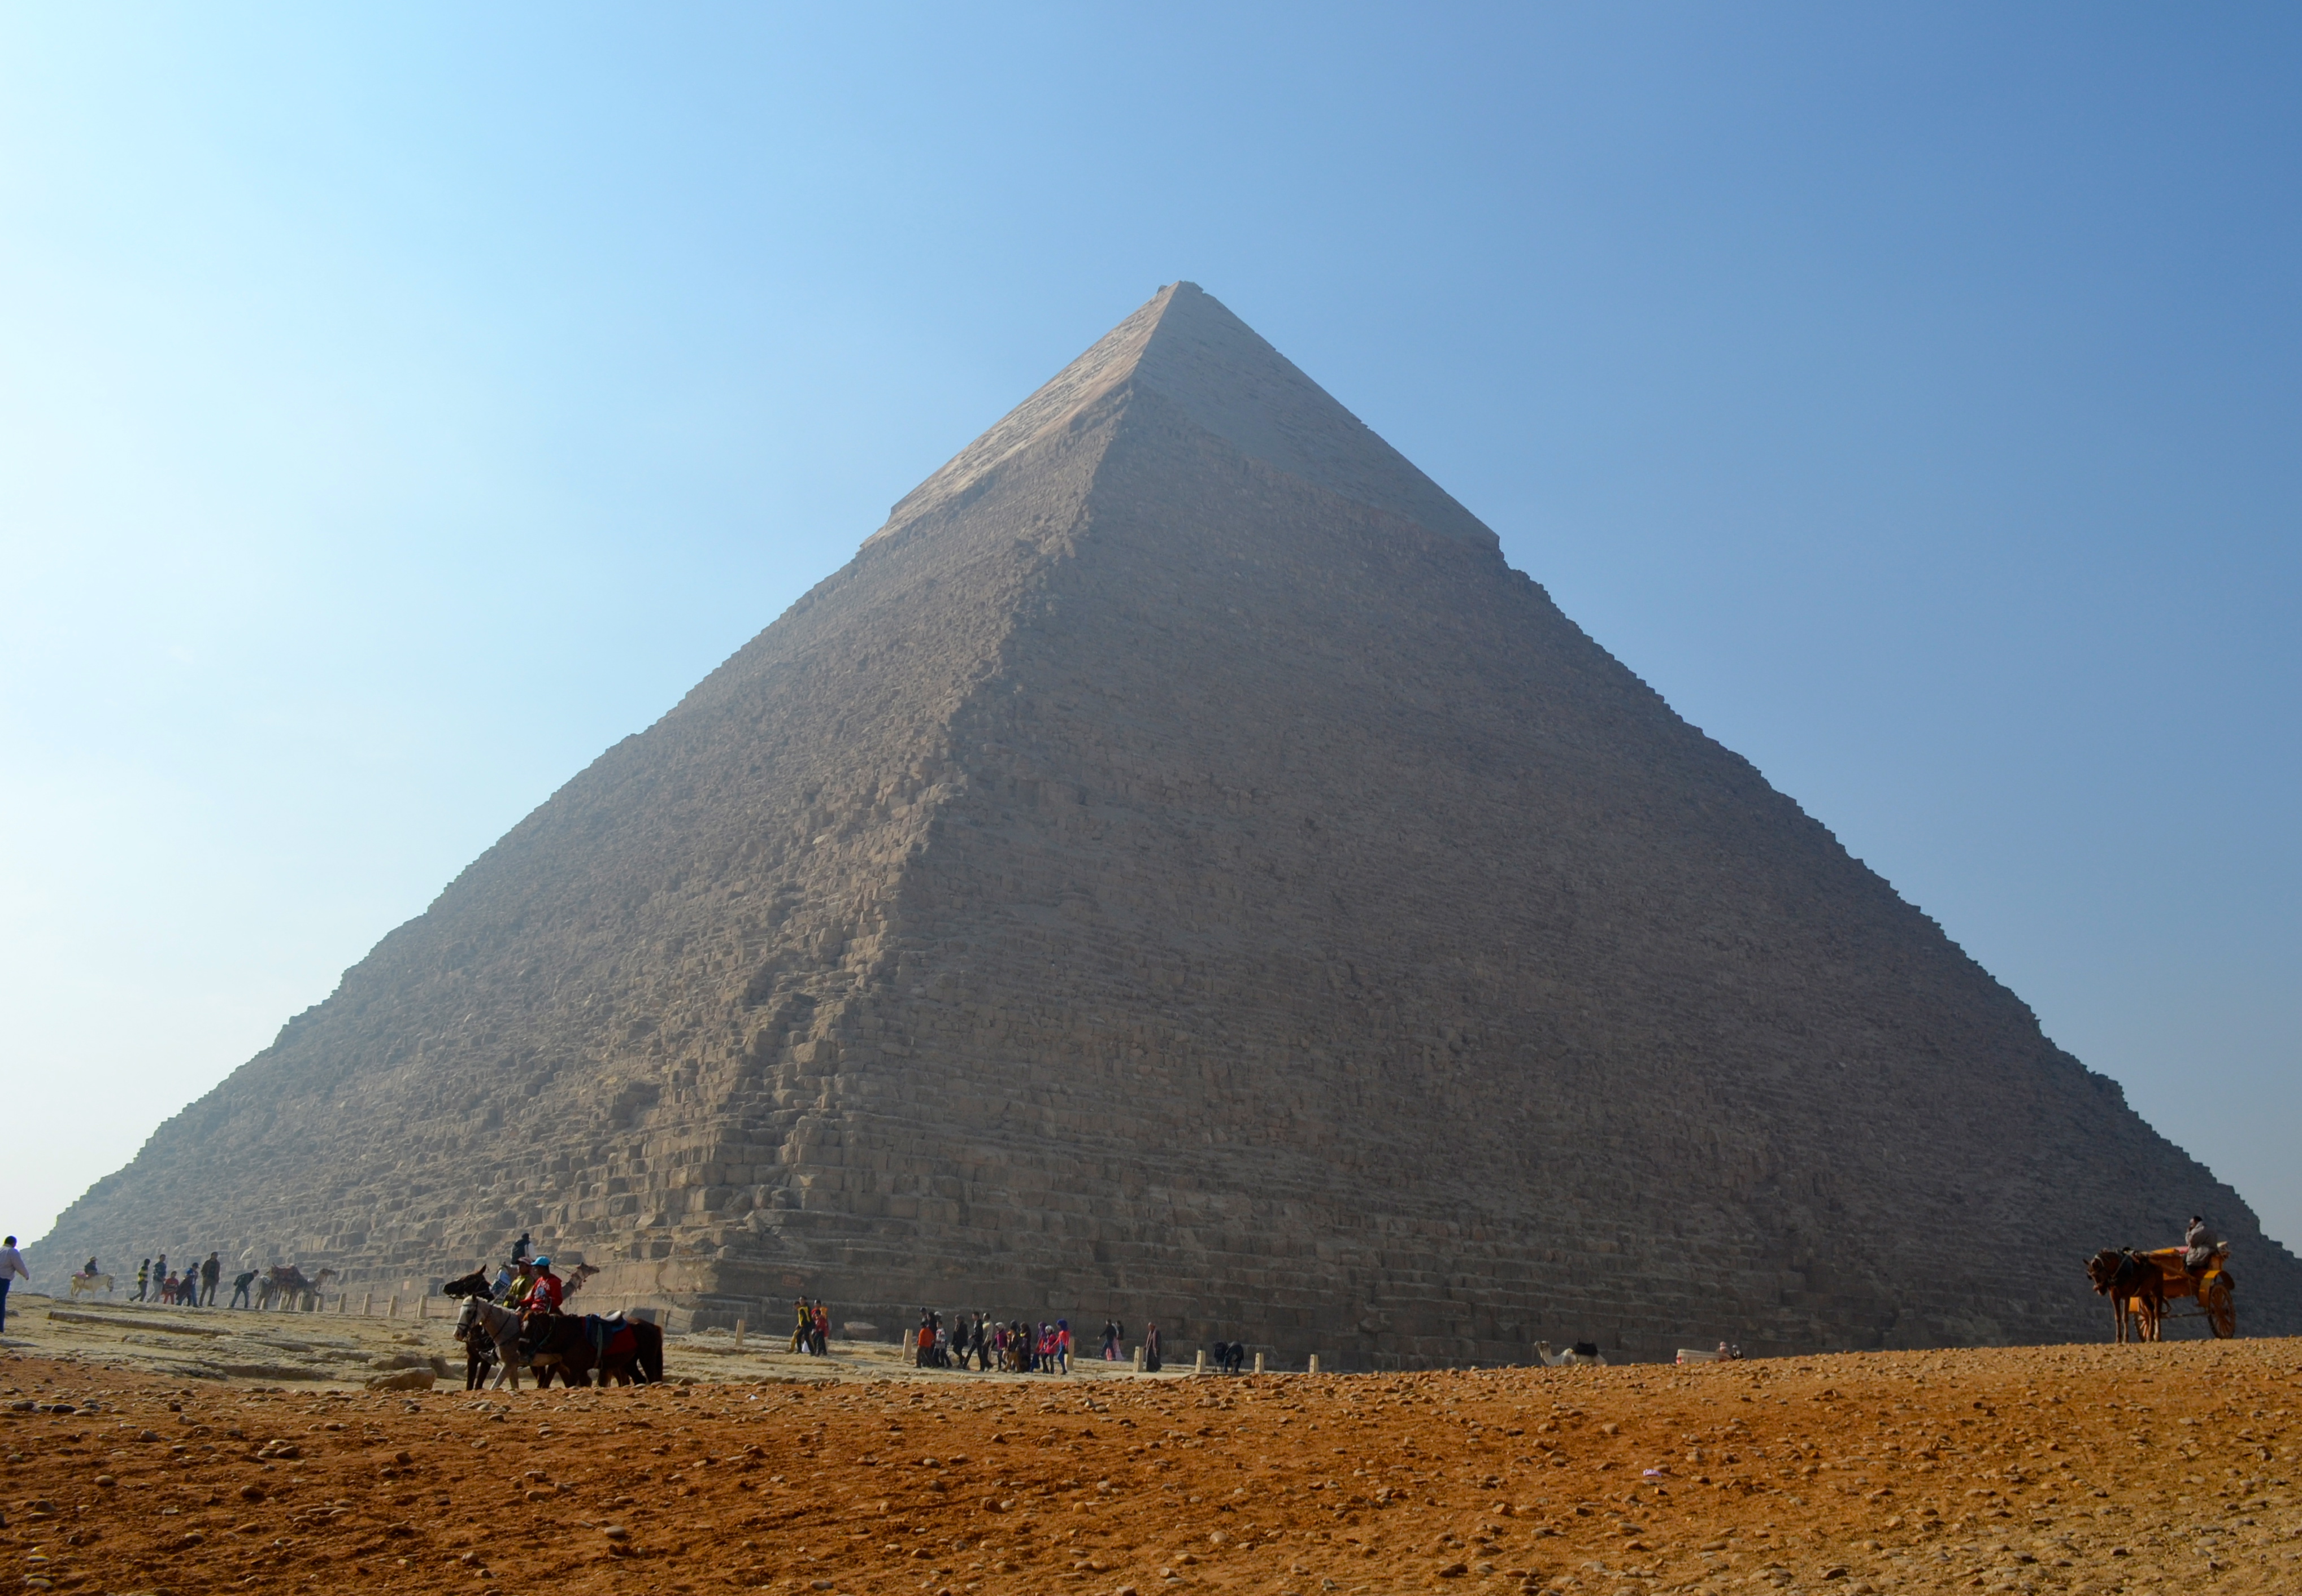 The Great Pyramid of Giza (Pyramid of Khufu)